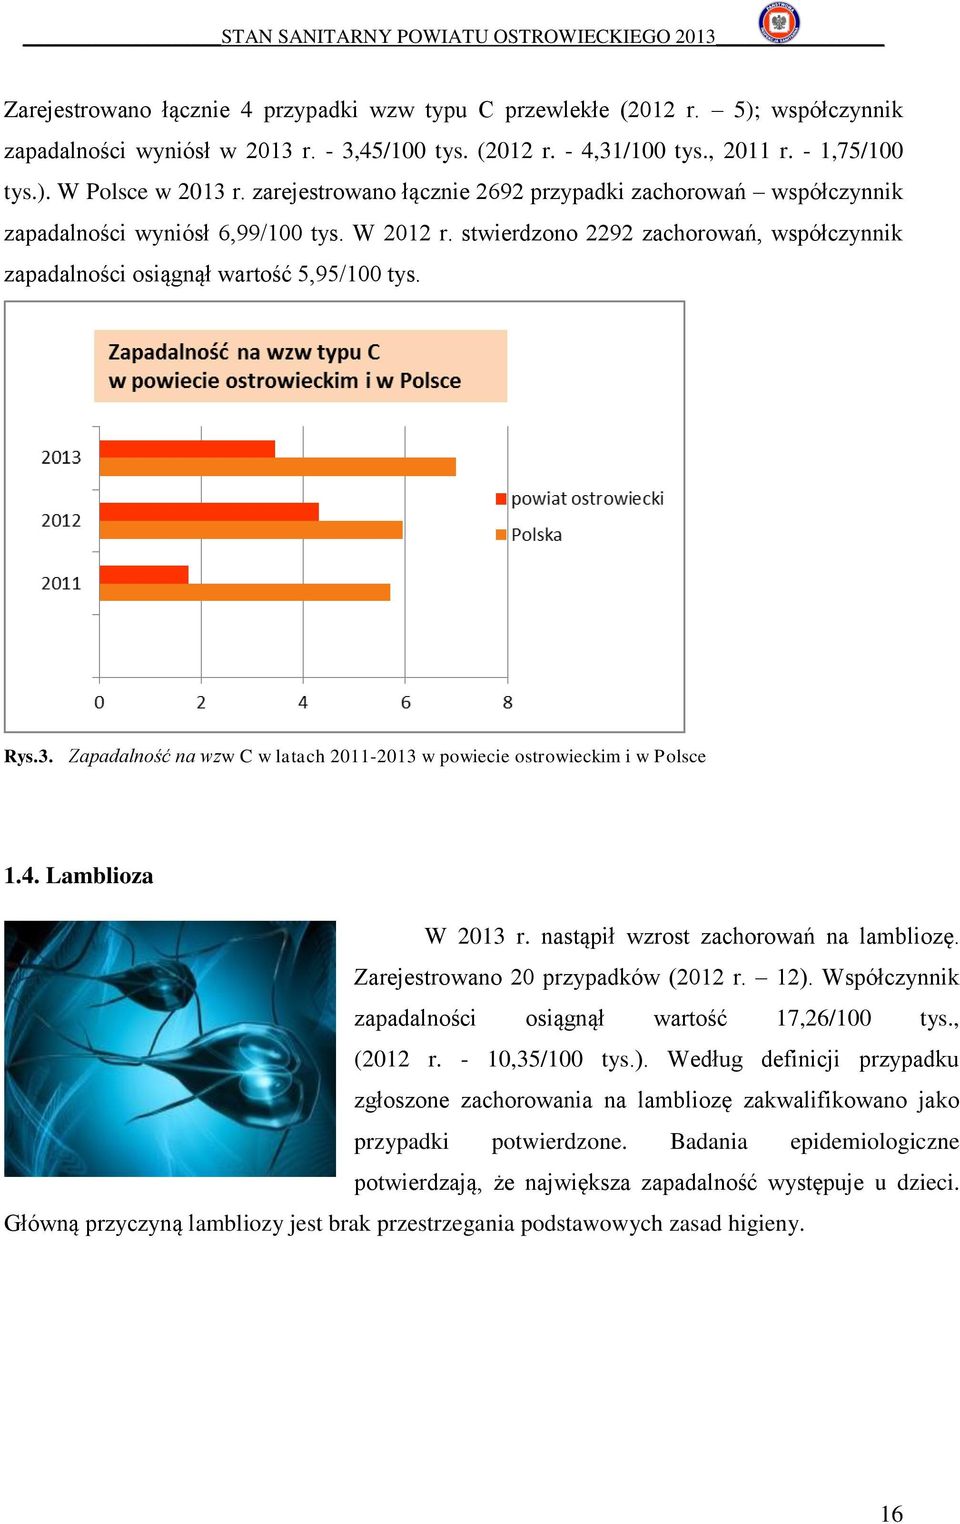 Zapadalność na wzw C w latach 2011-2013 w powiecie ostrowieckim i w Polsce 1.4. Lamblioza W 2013 r. nastąpił wzrost zachorowań na lambliozę. Zarejestrowano 20 przypadków (2012 r. 12).